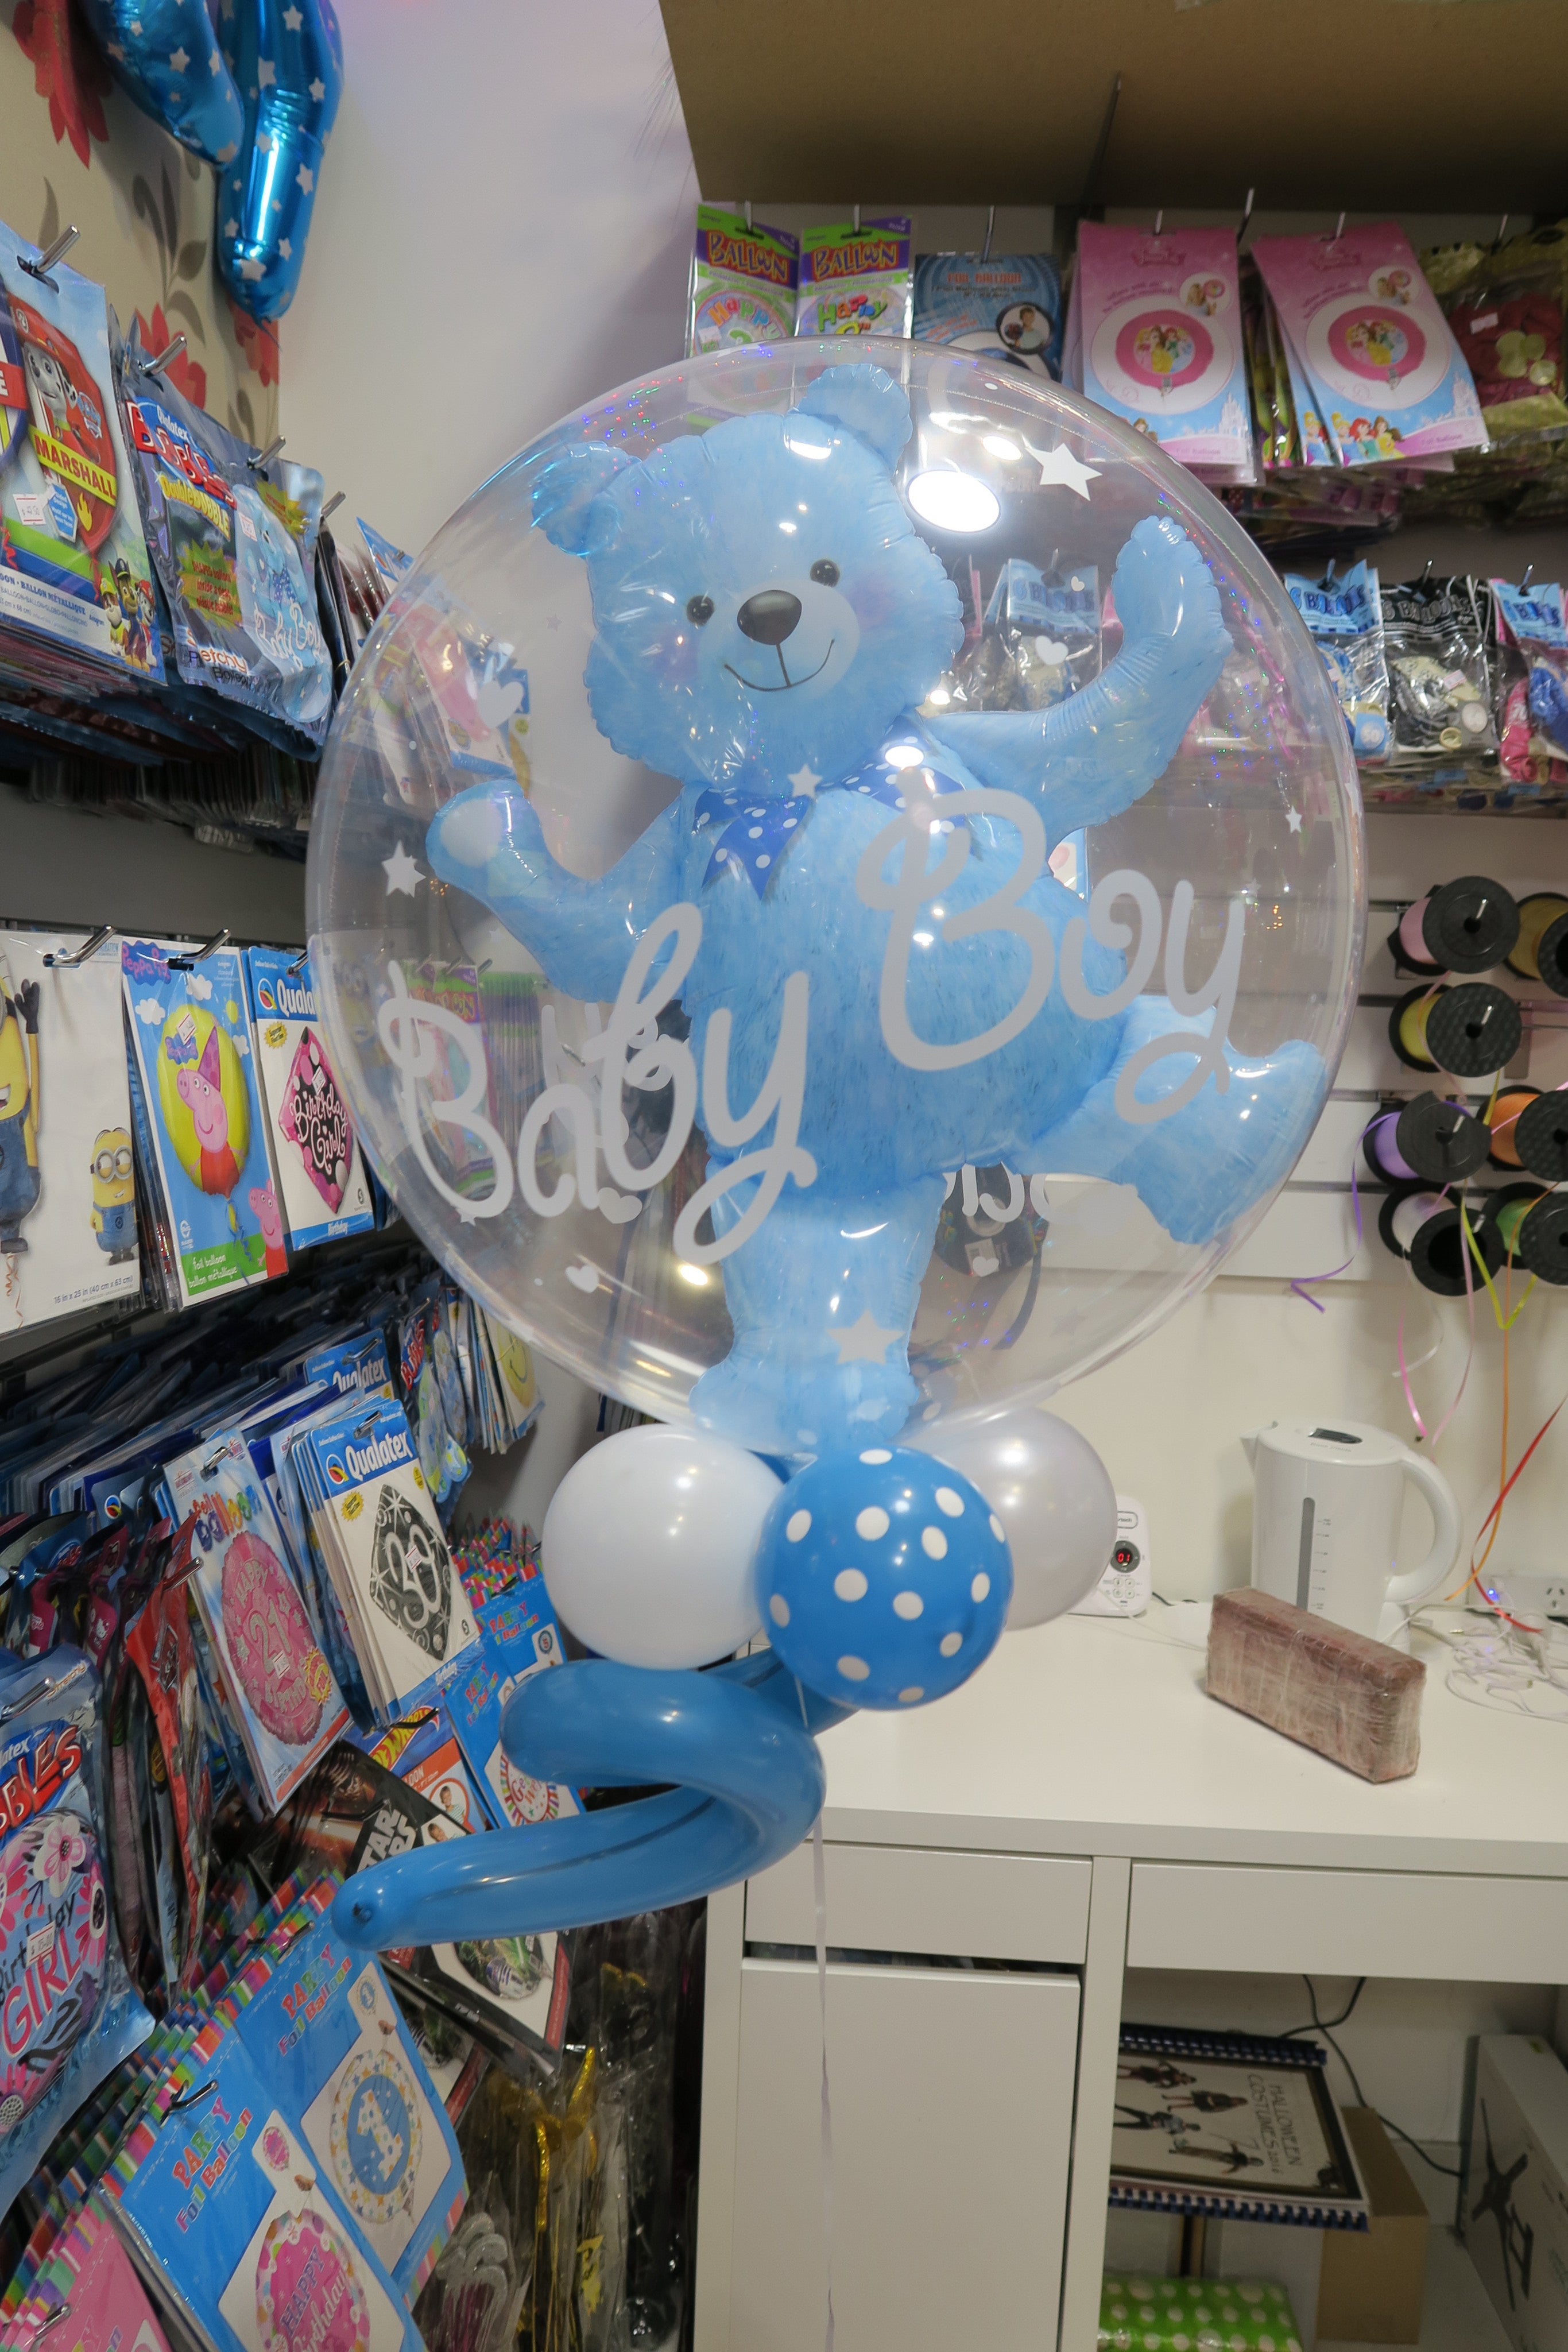 balloon with teddy bear inside